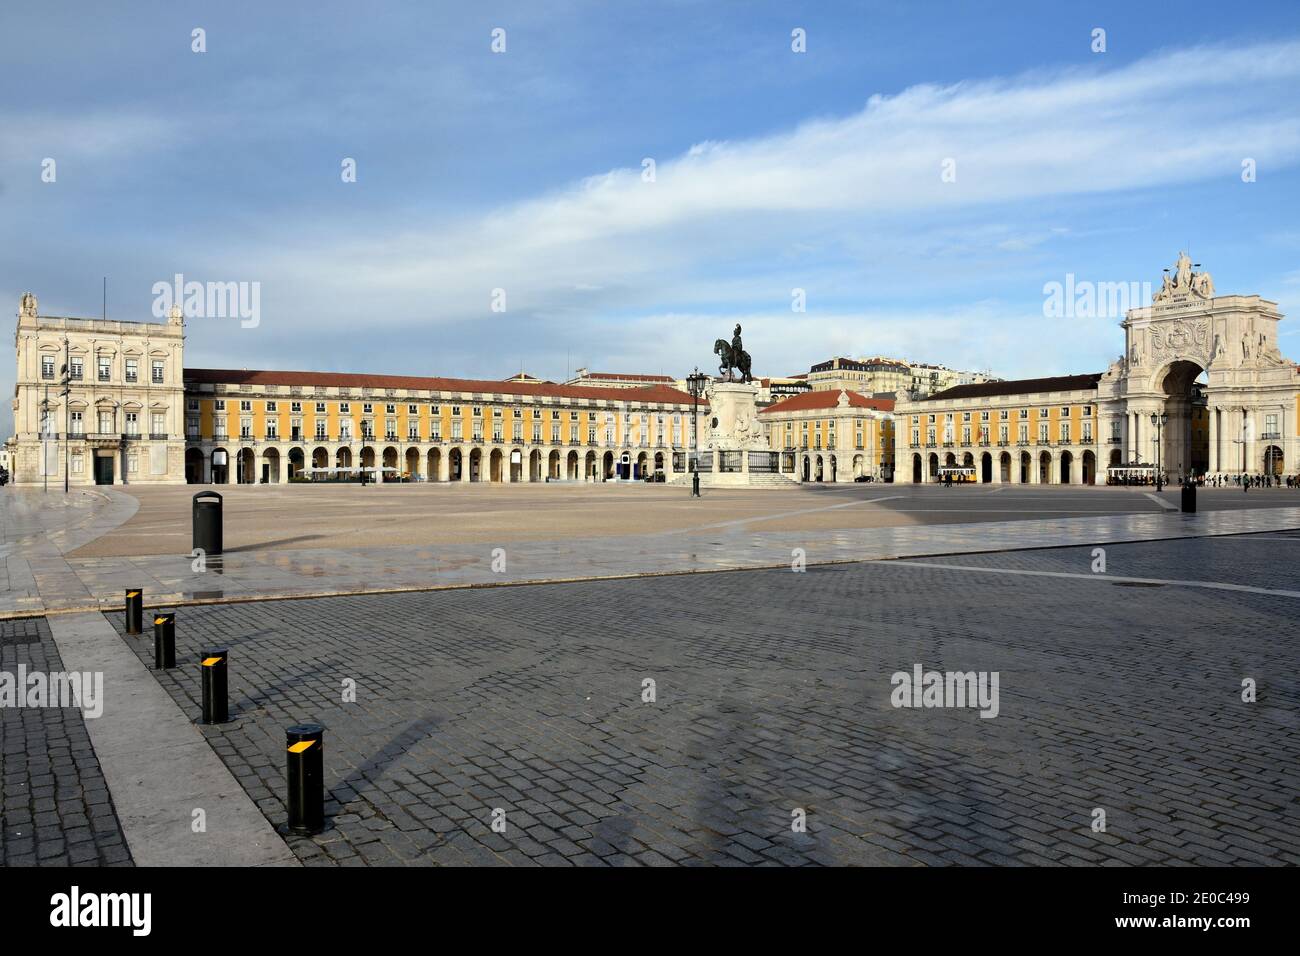 Portogallo, Lisbona, la Piazza del Commercio è formata da edifici simmetrici colorati, con un arco tiumfale e la statua esquistana di Re Giuseppe 1. Foto Stock